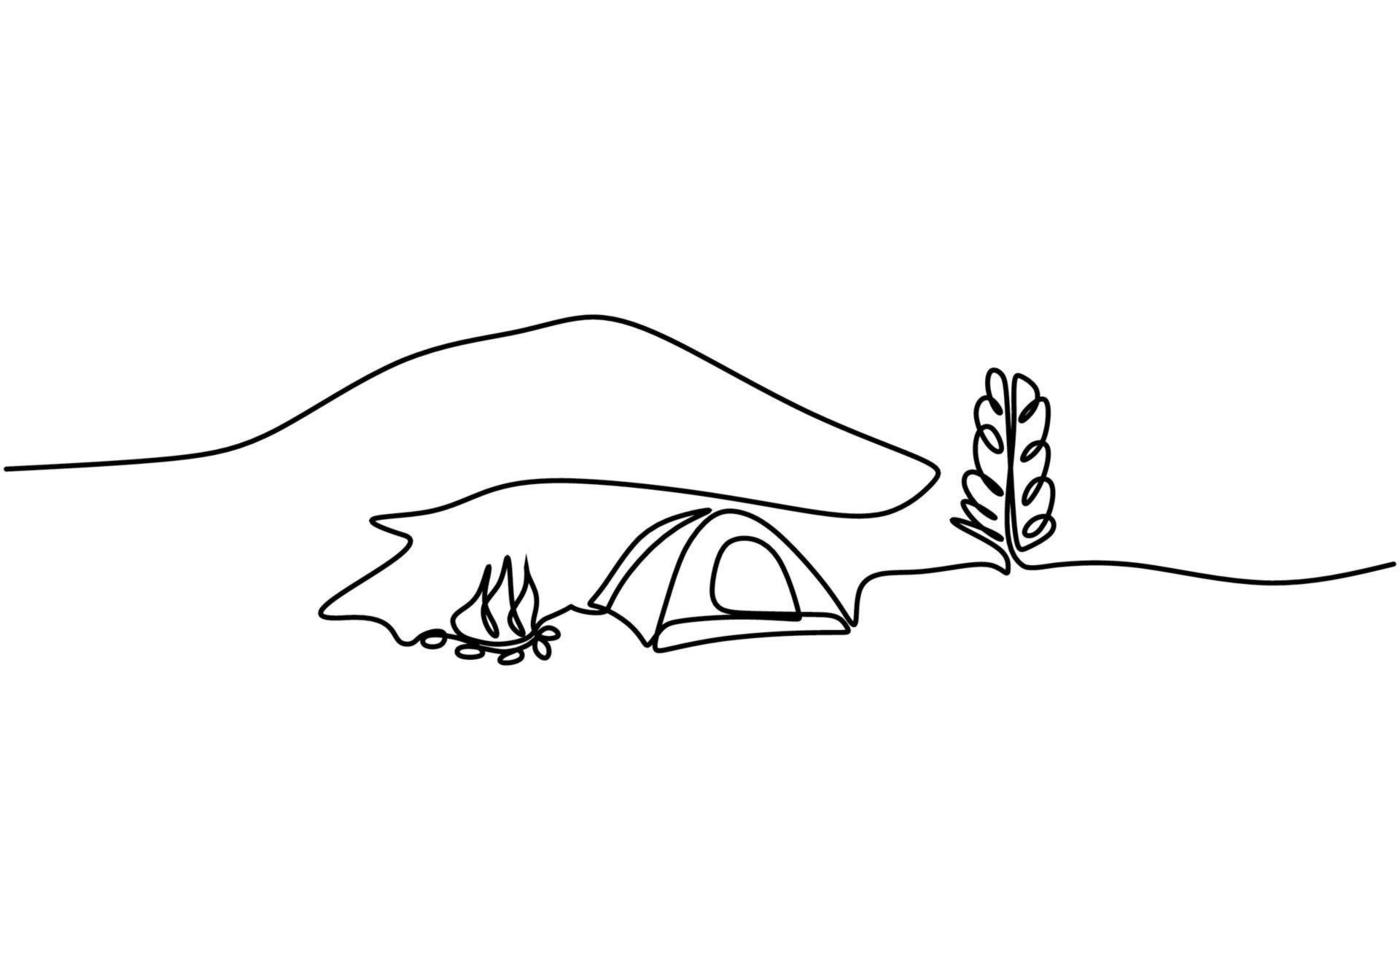 kontinuierliche einzelne Linienzeichnung eines einsamen Zeltes in den Bergen mit Lagerfeuer lokalisiert auf weißem Hintergrund. Wohnwagen, Wohnwagen, Wohnmobil, Wohnmobilanhänger-Konzept. minimalistischer Stil. Vektor